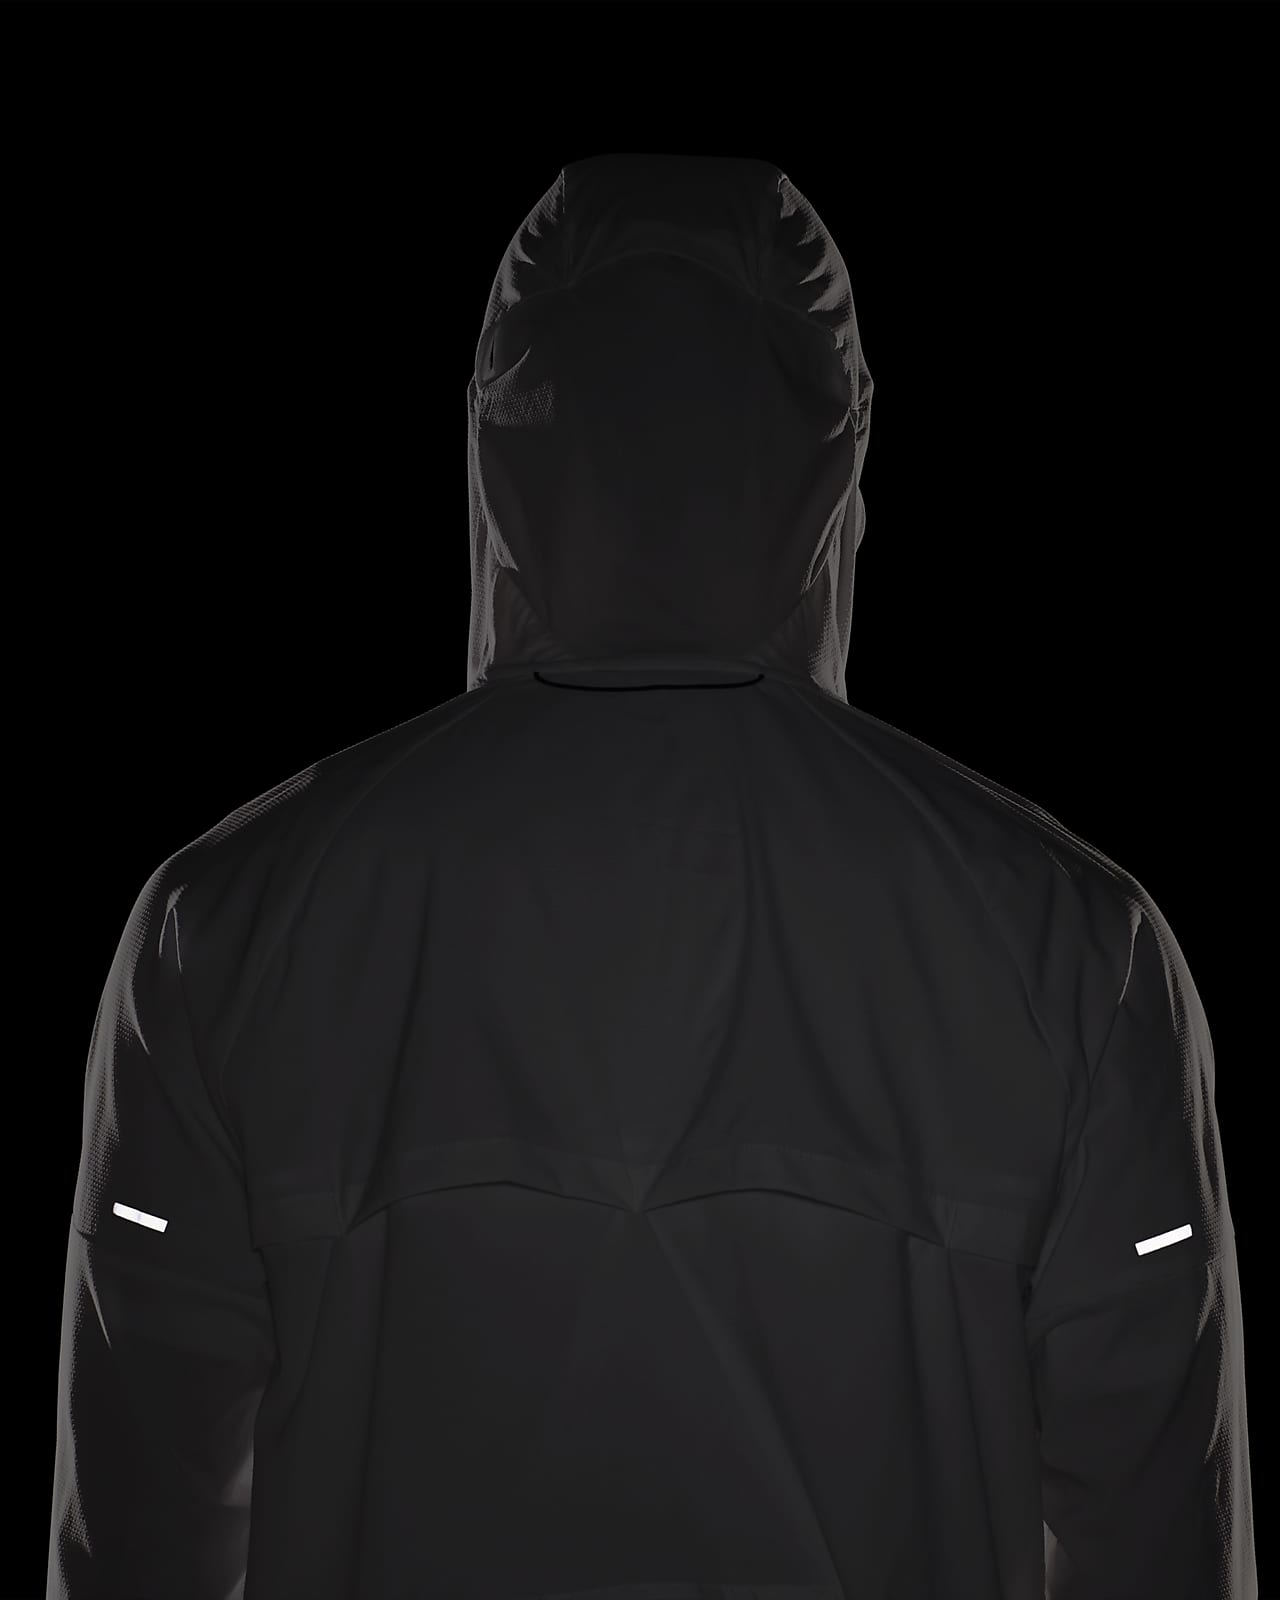 Perfekt Støv leksikon Nike Windrunner Men's Running Jacket. Nike JP